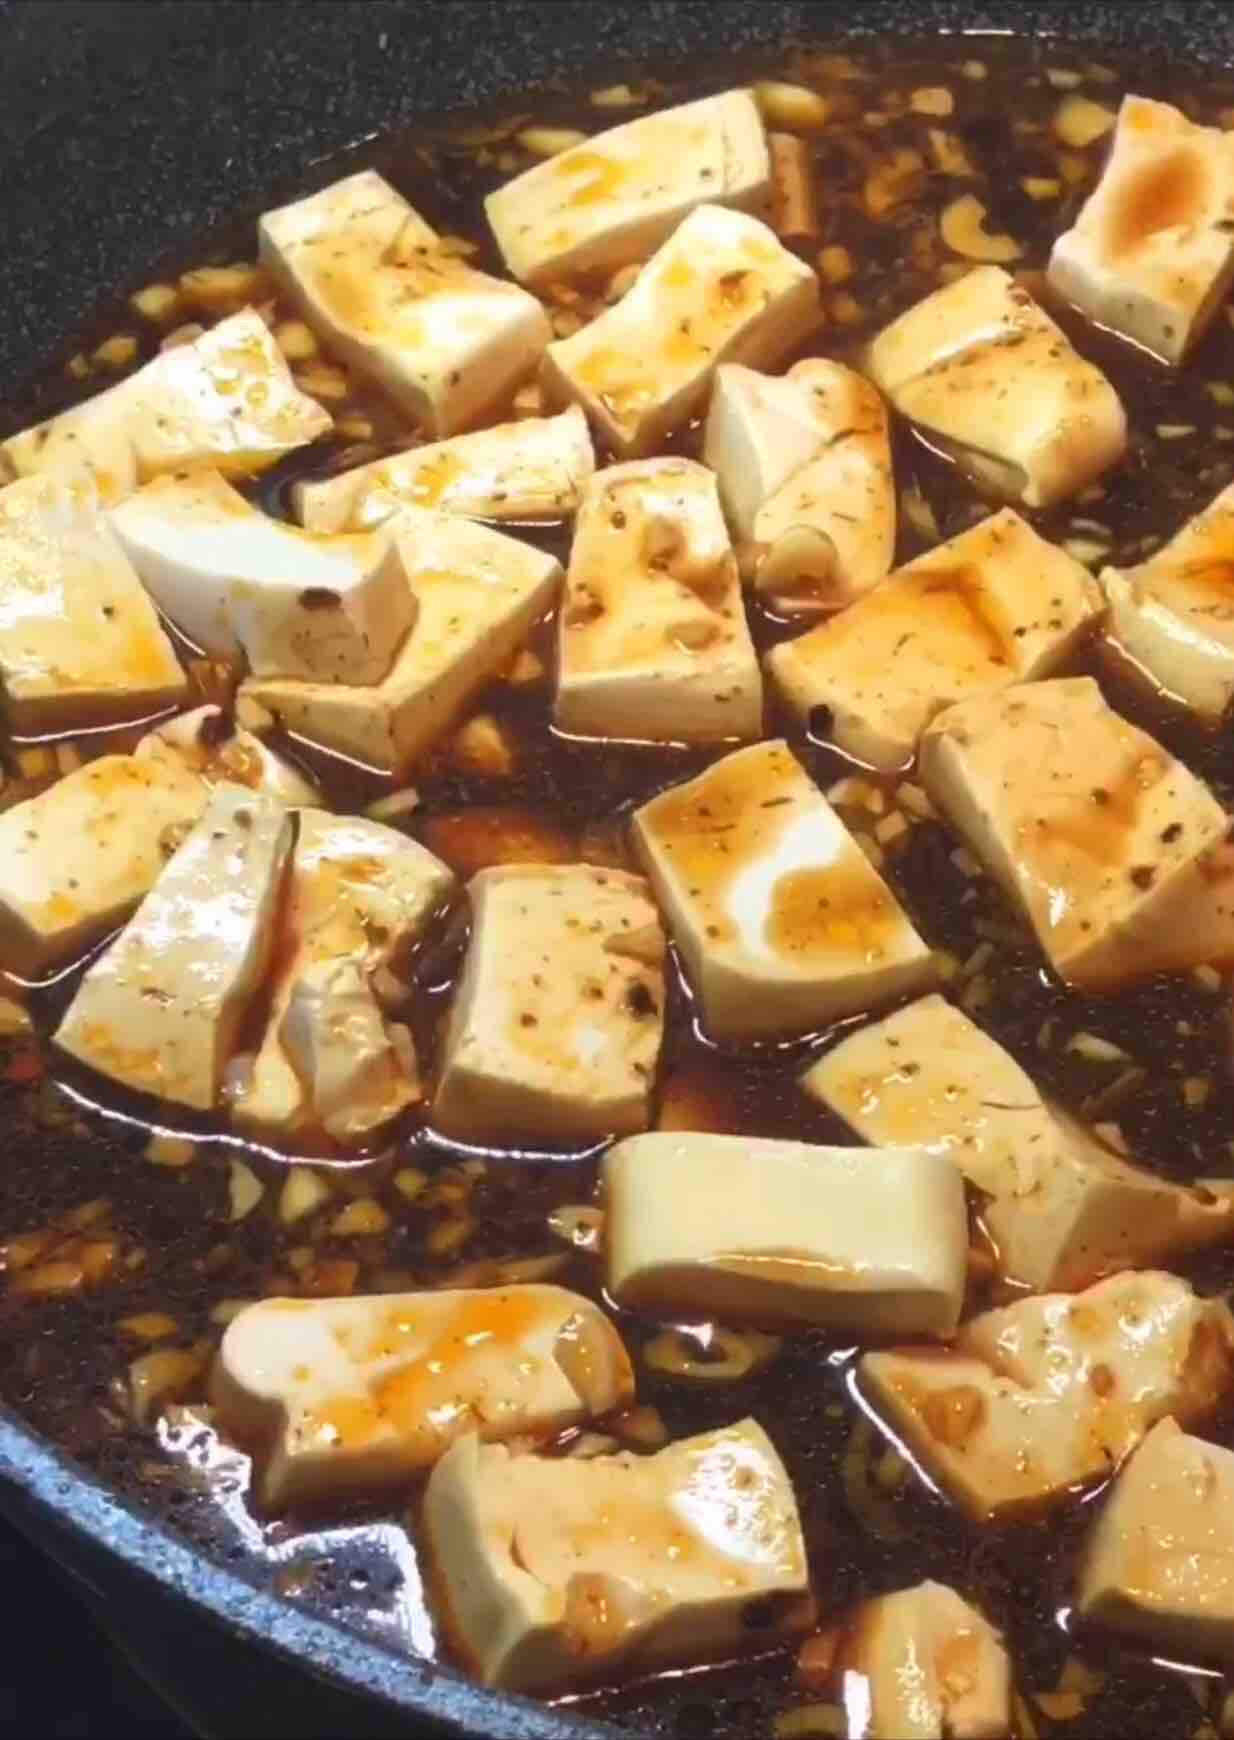 Home-style Tofu recipe